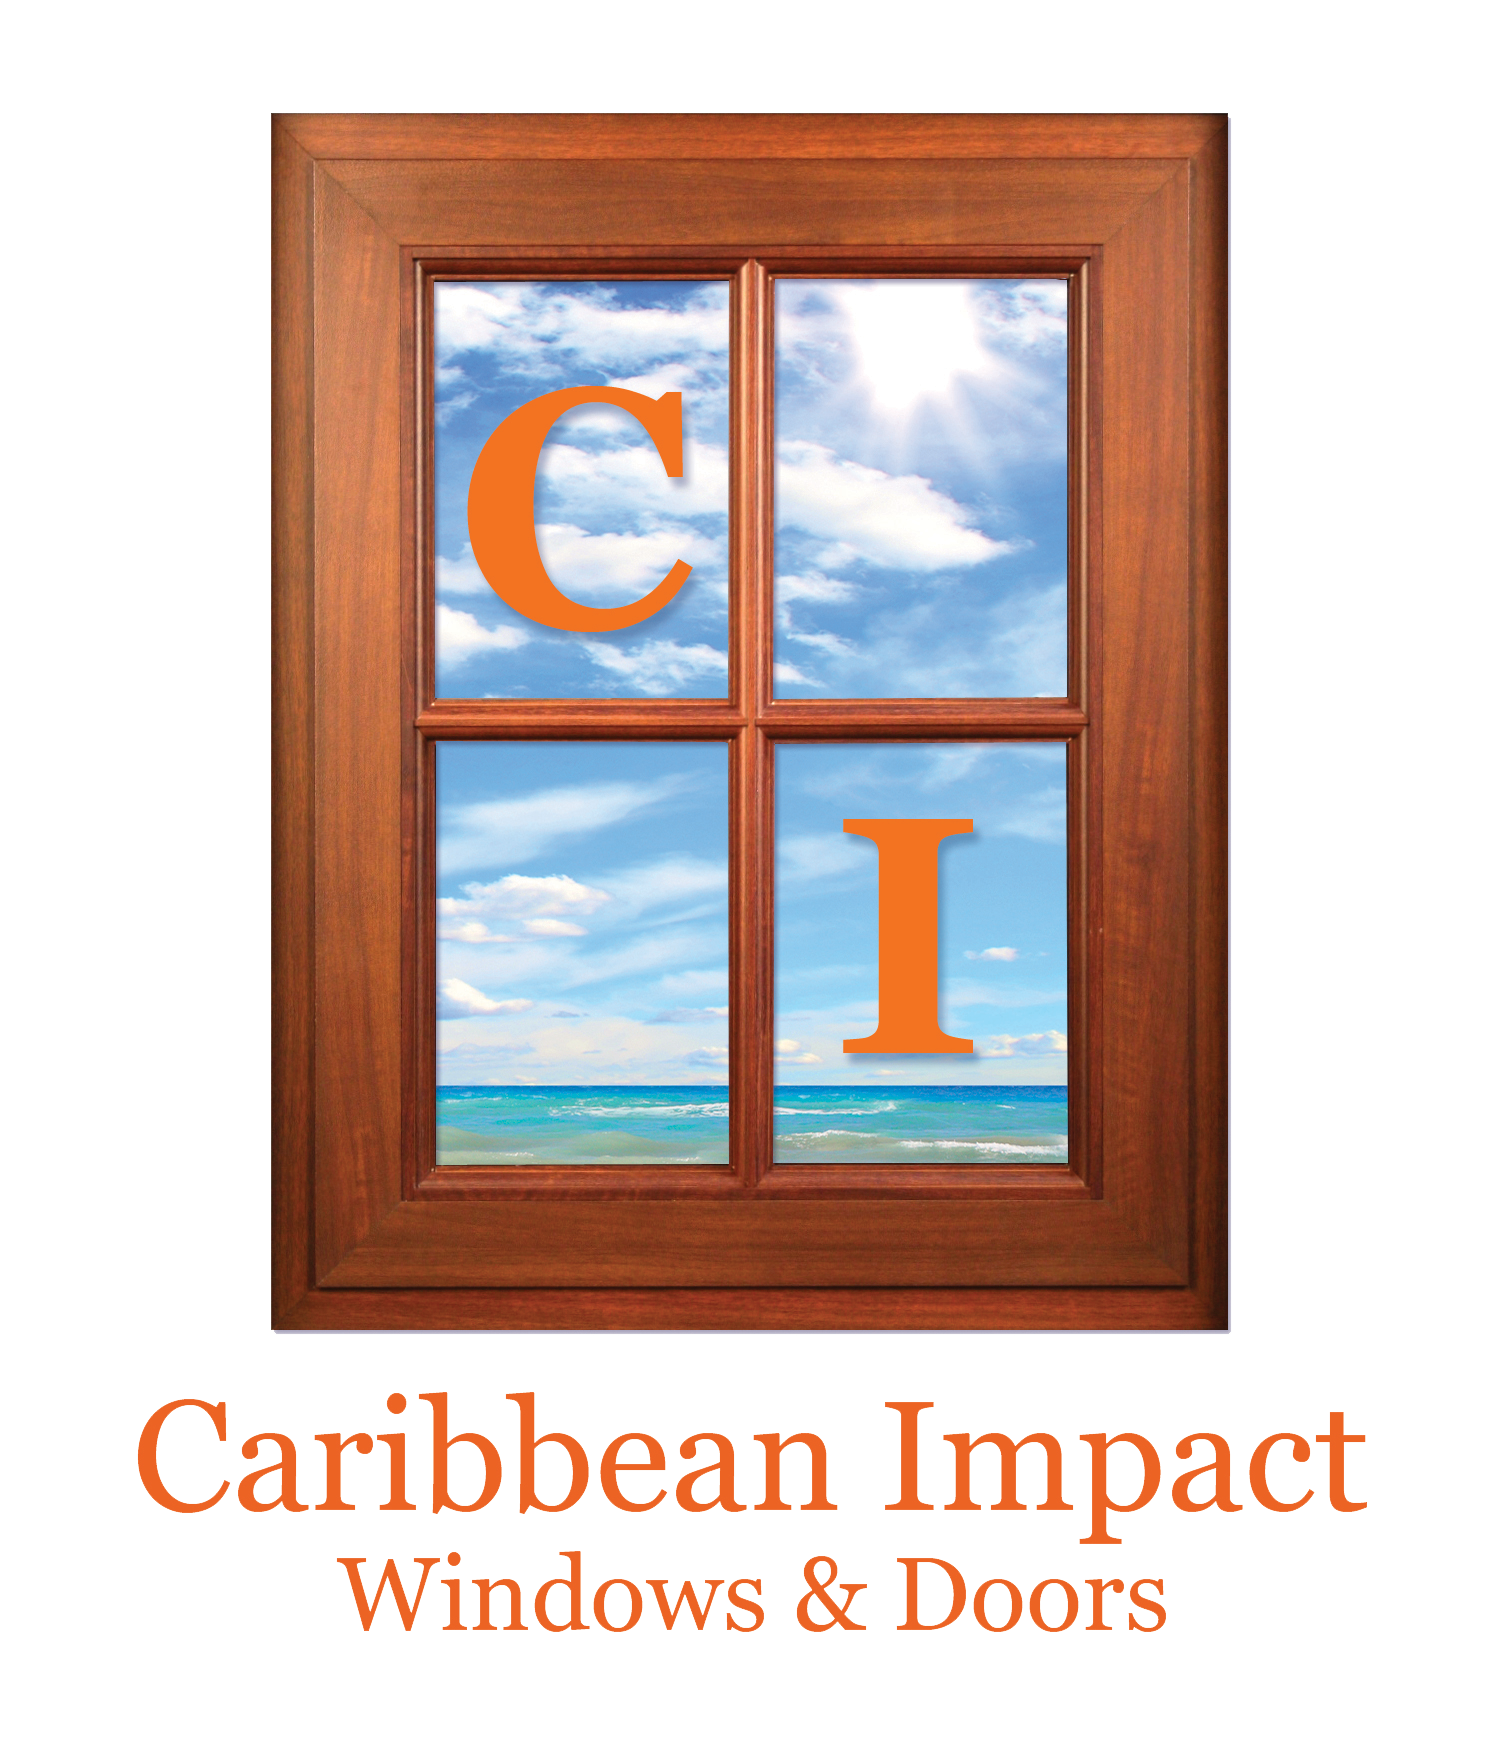 Caribbean Impact Windows & Doors